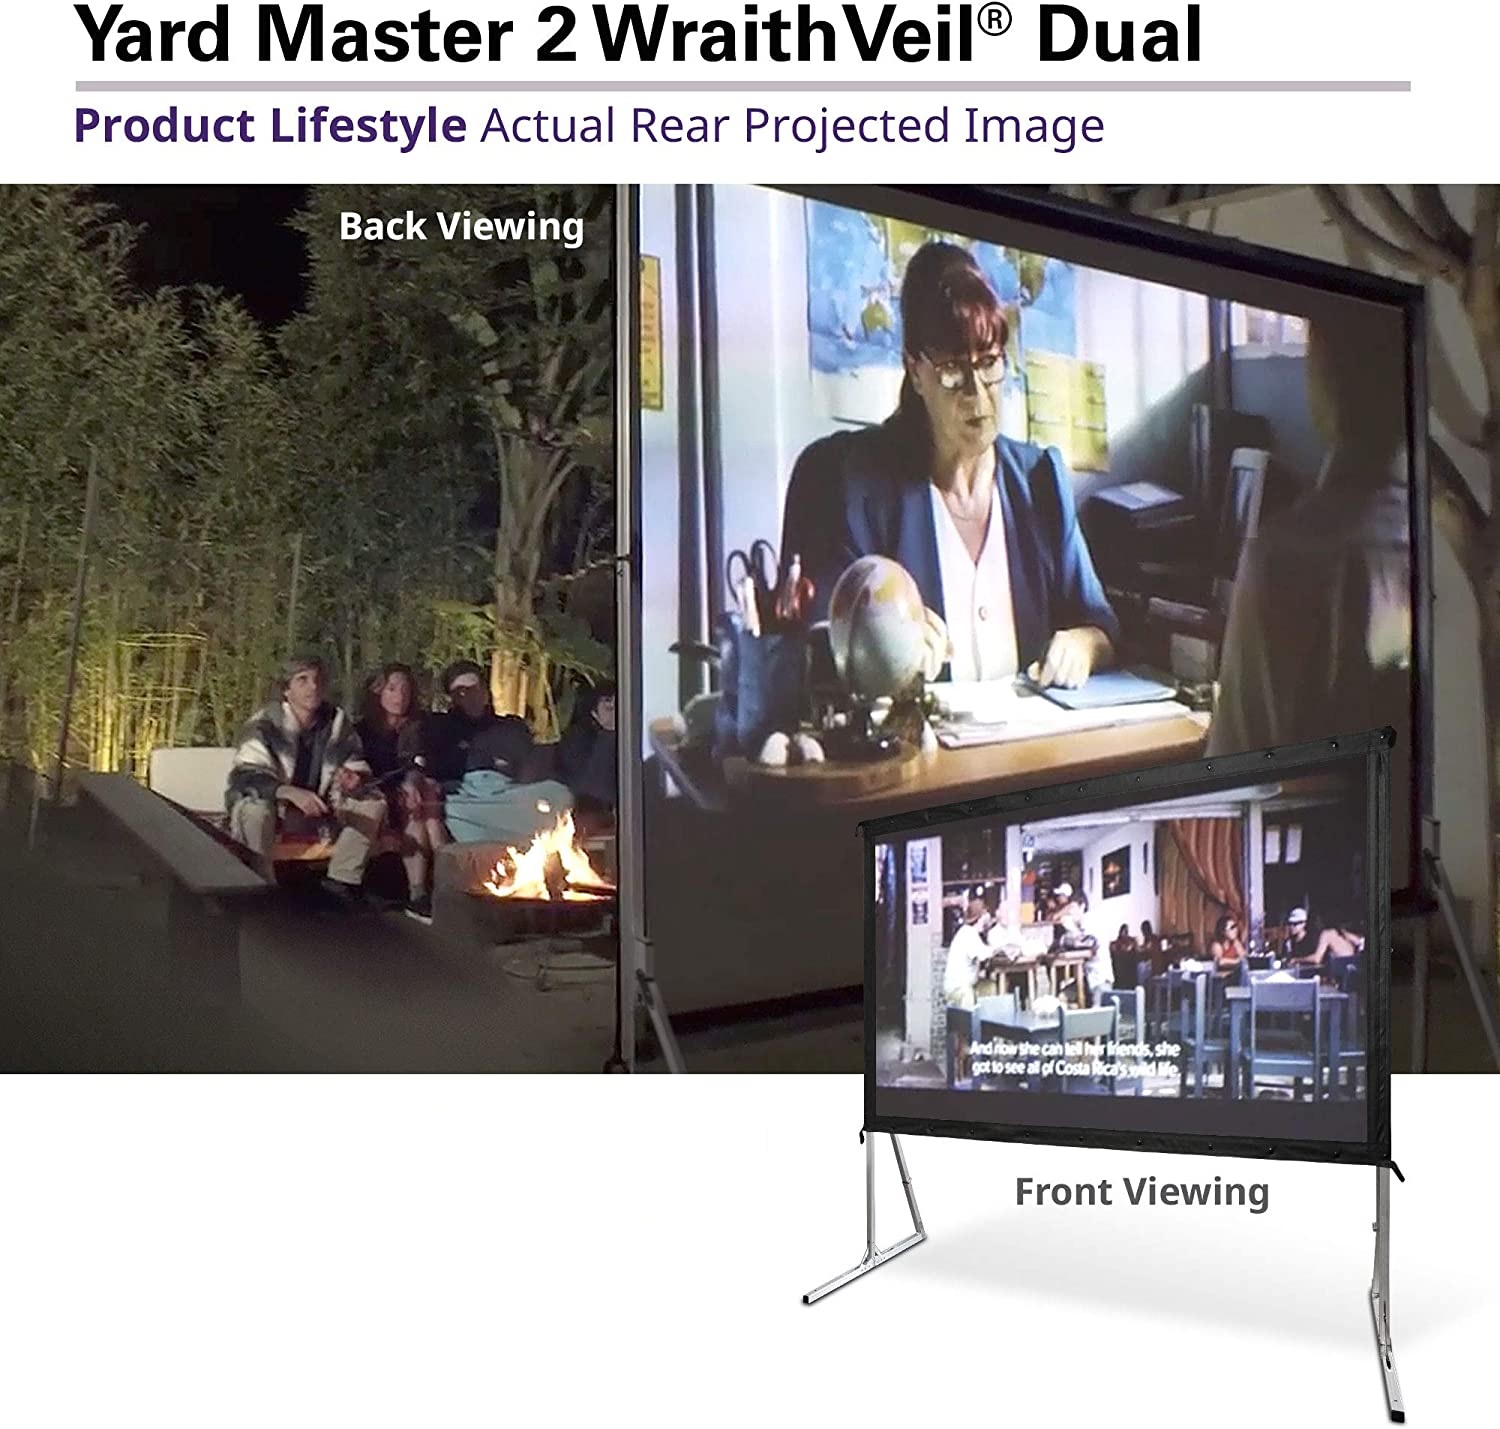 Màn Chiếu Elite Screens Dòng Yard Master 2 Dual (chiếu 2 mặt), 100 inch Tỷ lệ Khung Hình 16:9 (Vùng hiển thị 124.5 x 220.1 cm) 0.8 Gain (OMS100H2-DUAL) – Hàng Chính Hãng